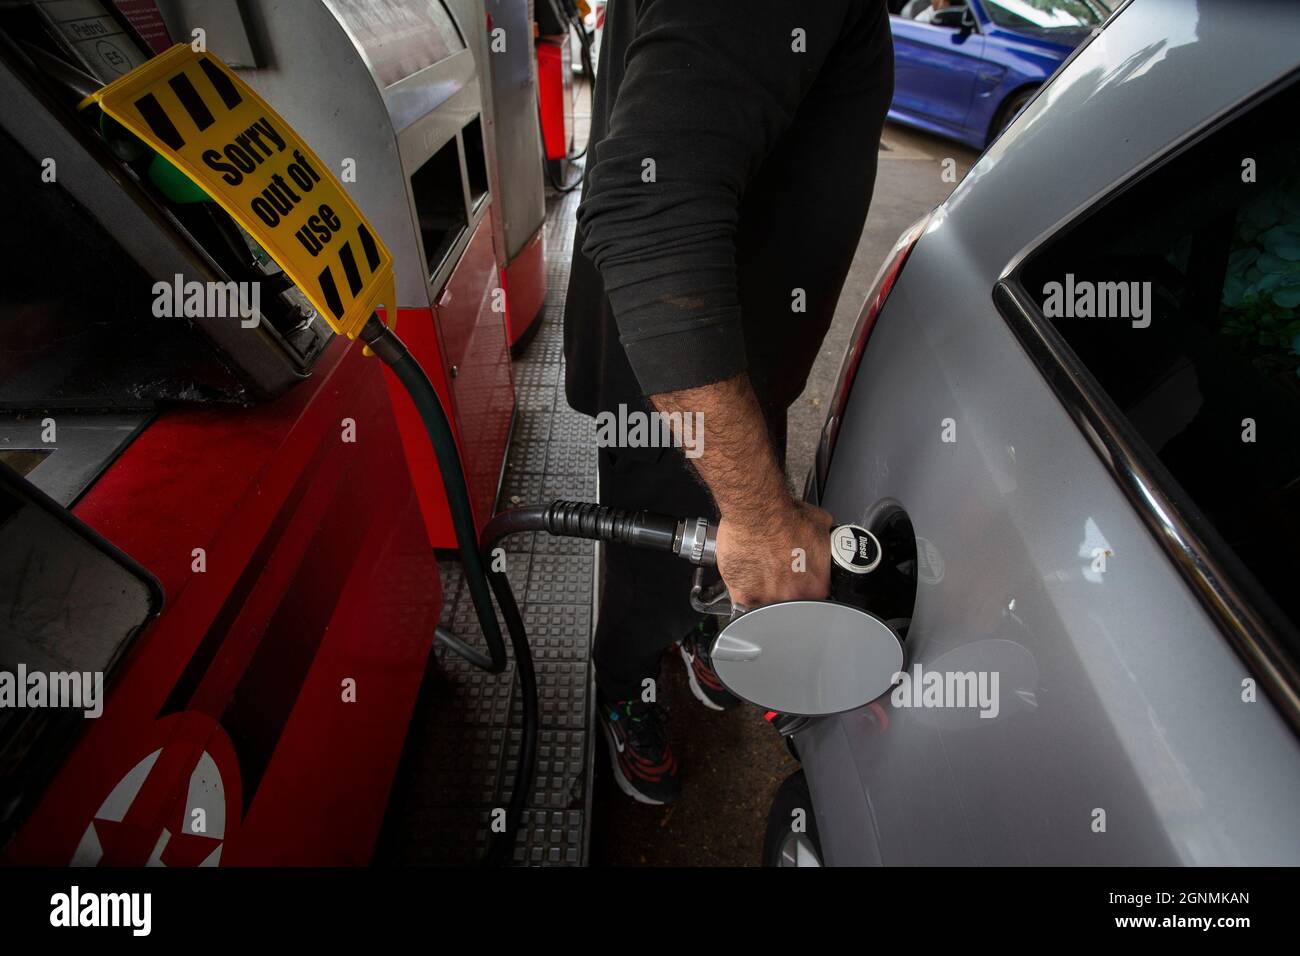 Il motociclista è il serbatoio di riempimento accanto al cartello di fuori uso sulle pompe di benzina senza carburante presso la stazione di benzina a Londra, Regno Unito Foto Stock